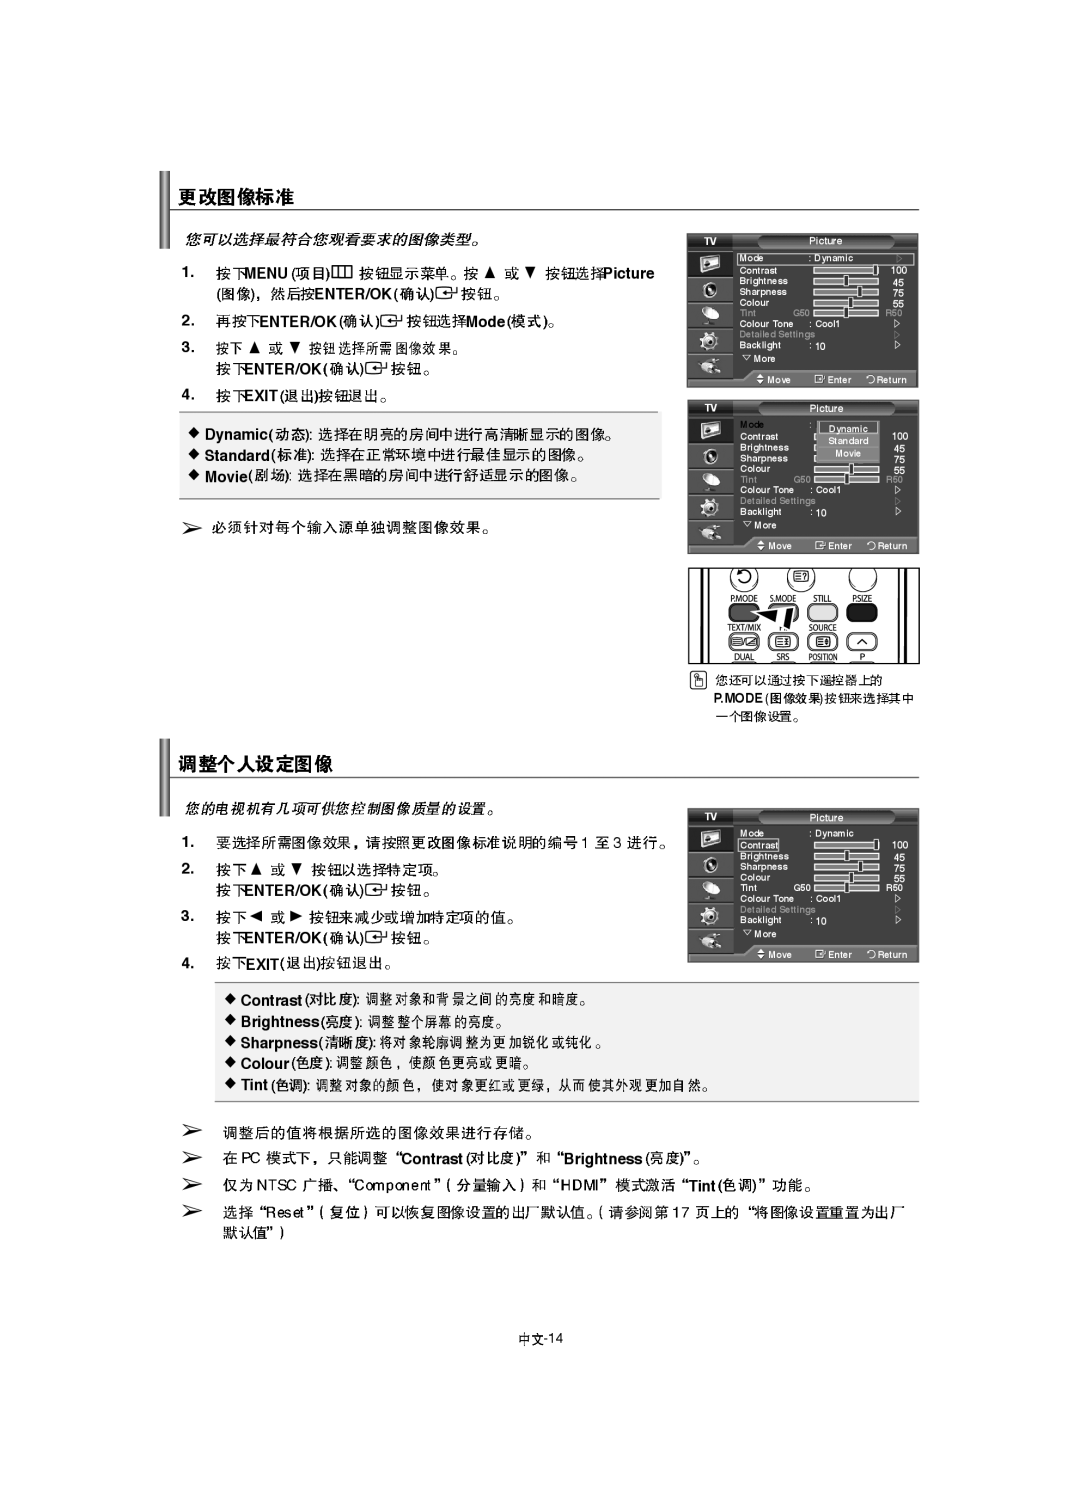 Samsung LA46F8, LA52F8, LA40F8 manual Enter/Ok, Exit, Picture, P.Mode 